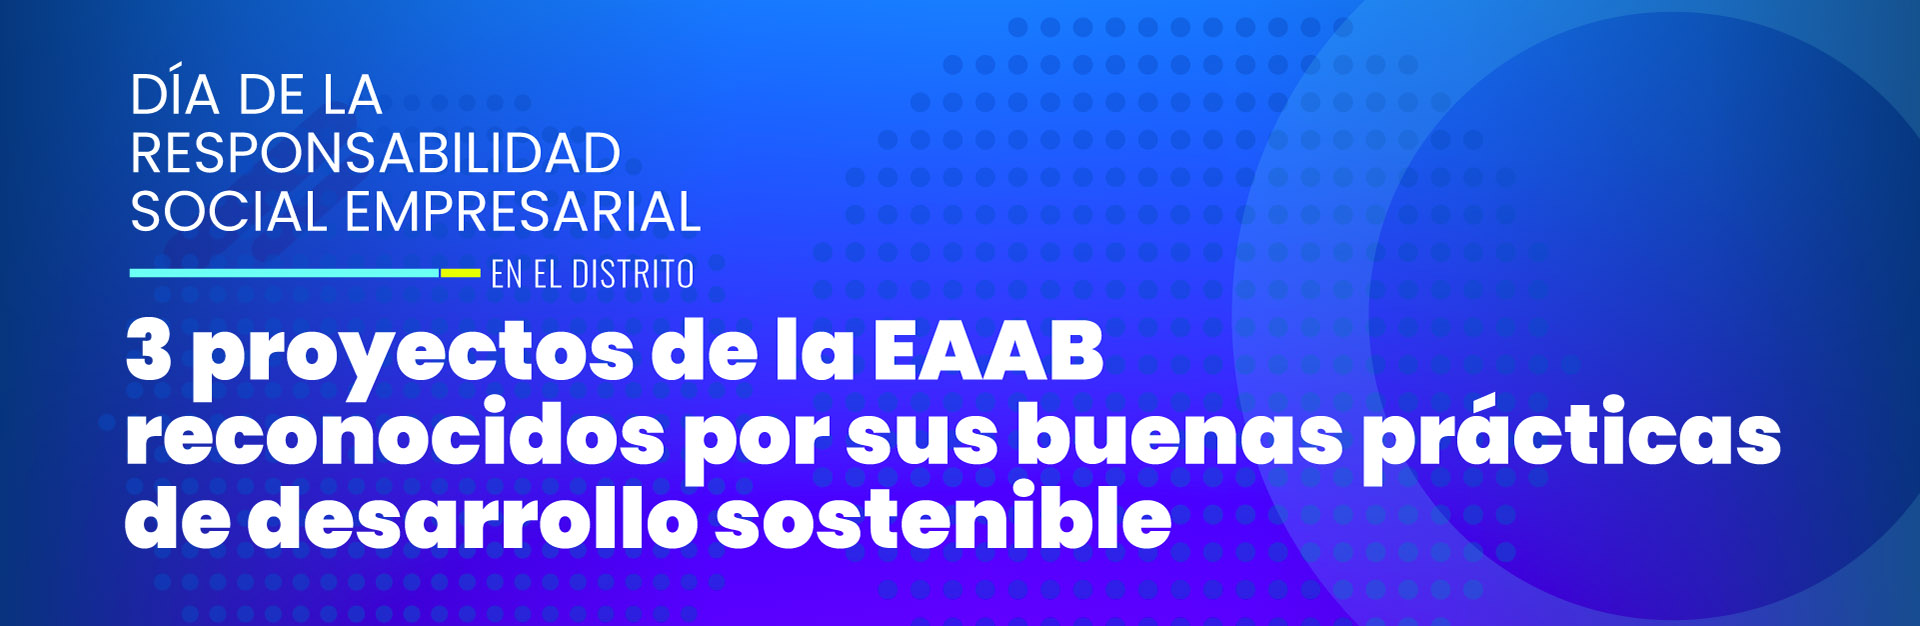 3 proyectos de la EAAB reconocidos  por sus buenas prácticas de desarrollo sostenible